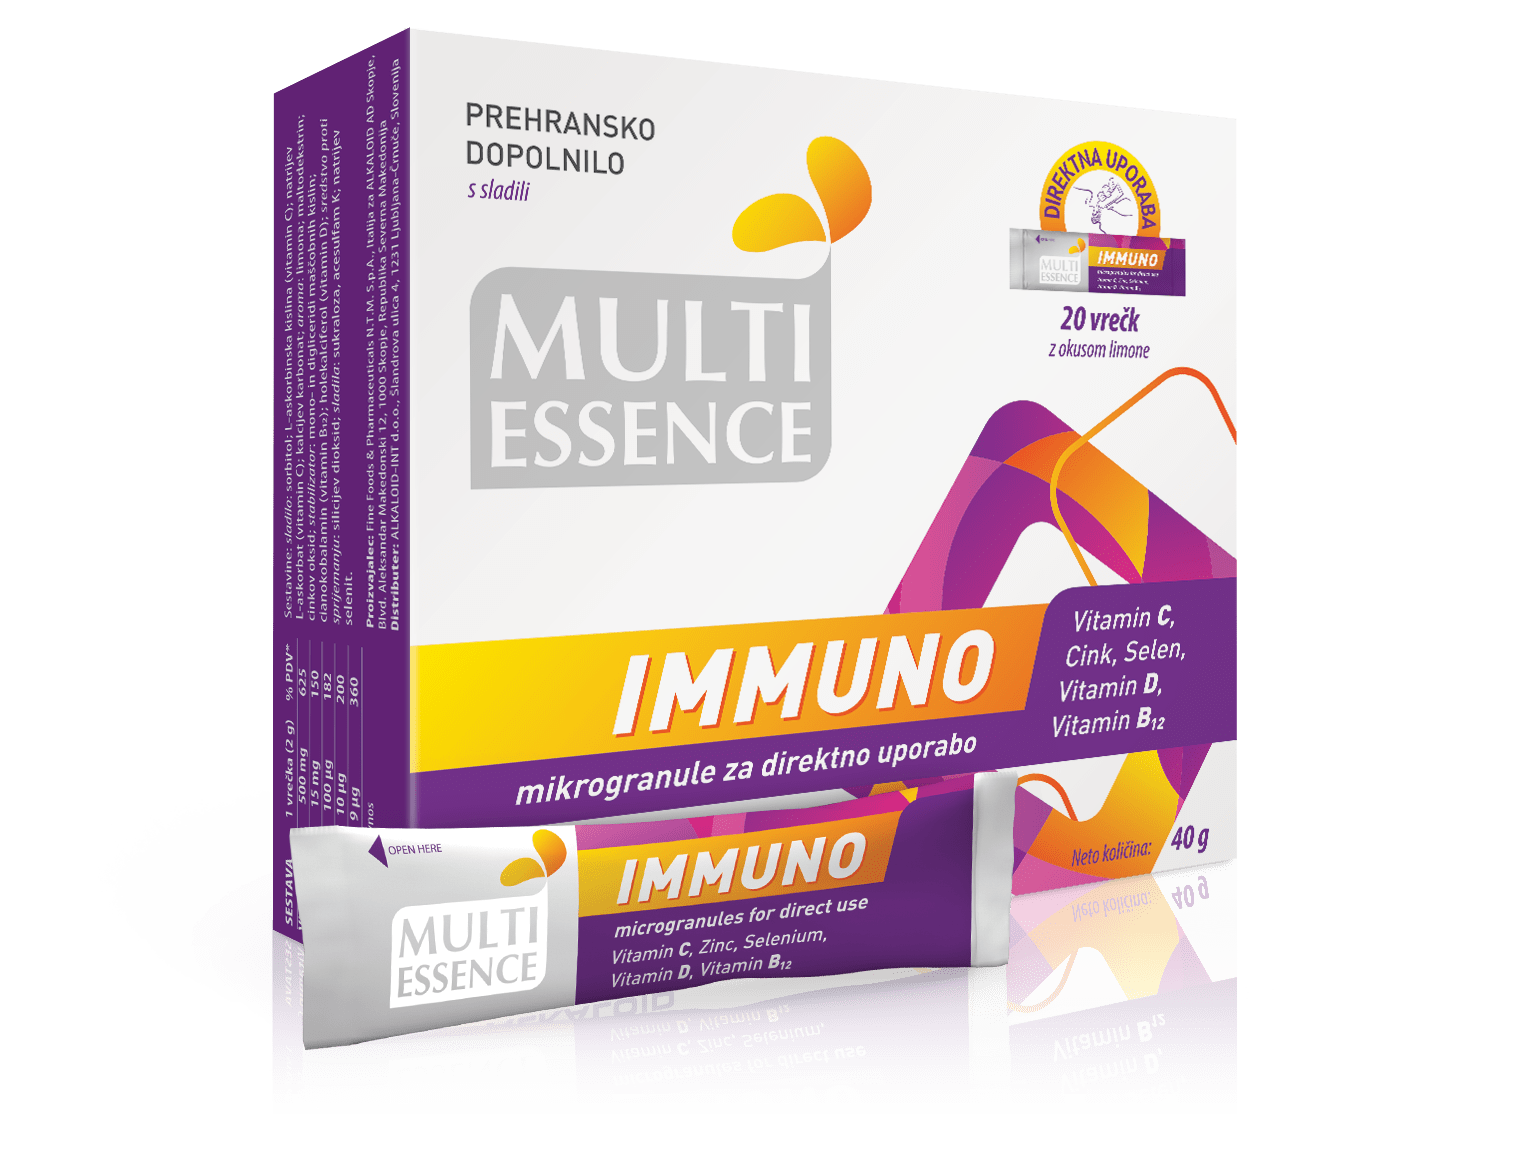 Multi Essence Immuno mikrogranule za direktno uporabo, 20 vrečk